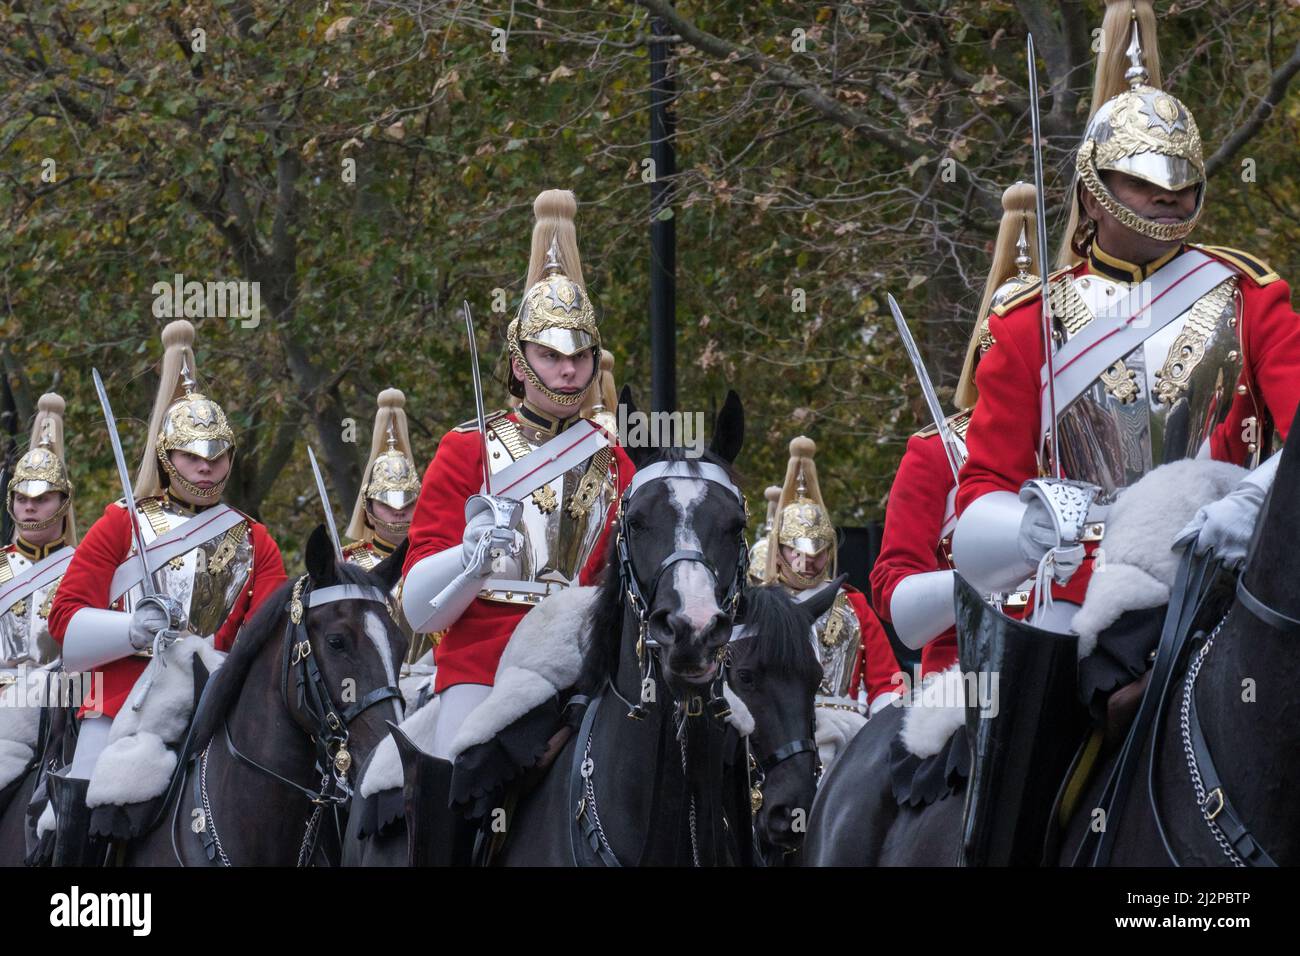 Le régiment monté de cavalerie de la maison tient des épées à cheval en uniformes de cérémonie au Lord Mayor’s Show 2021, Victoria Embankment, Londres. Banque D'Images